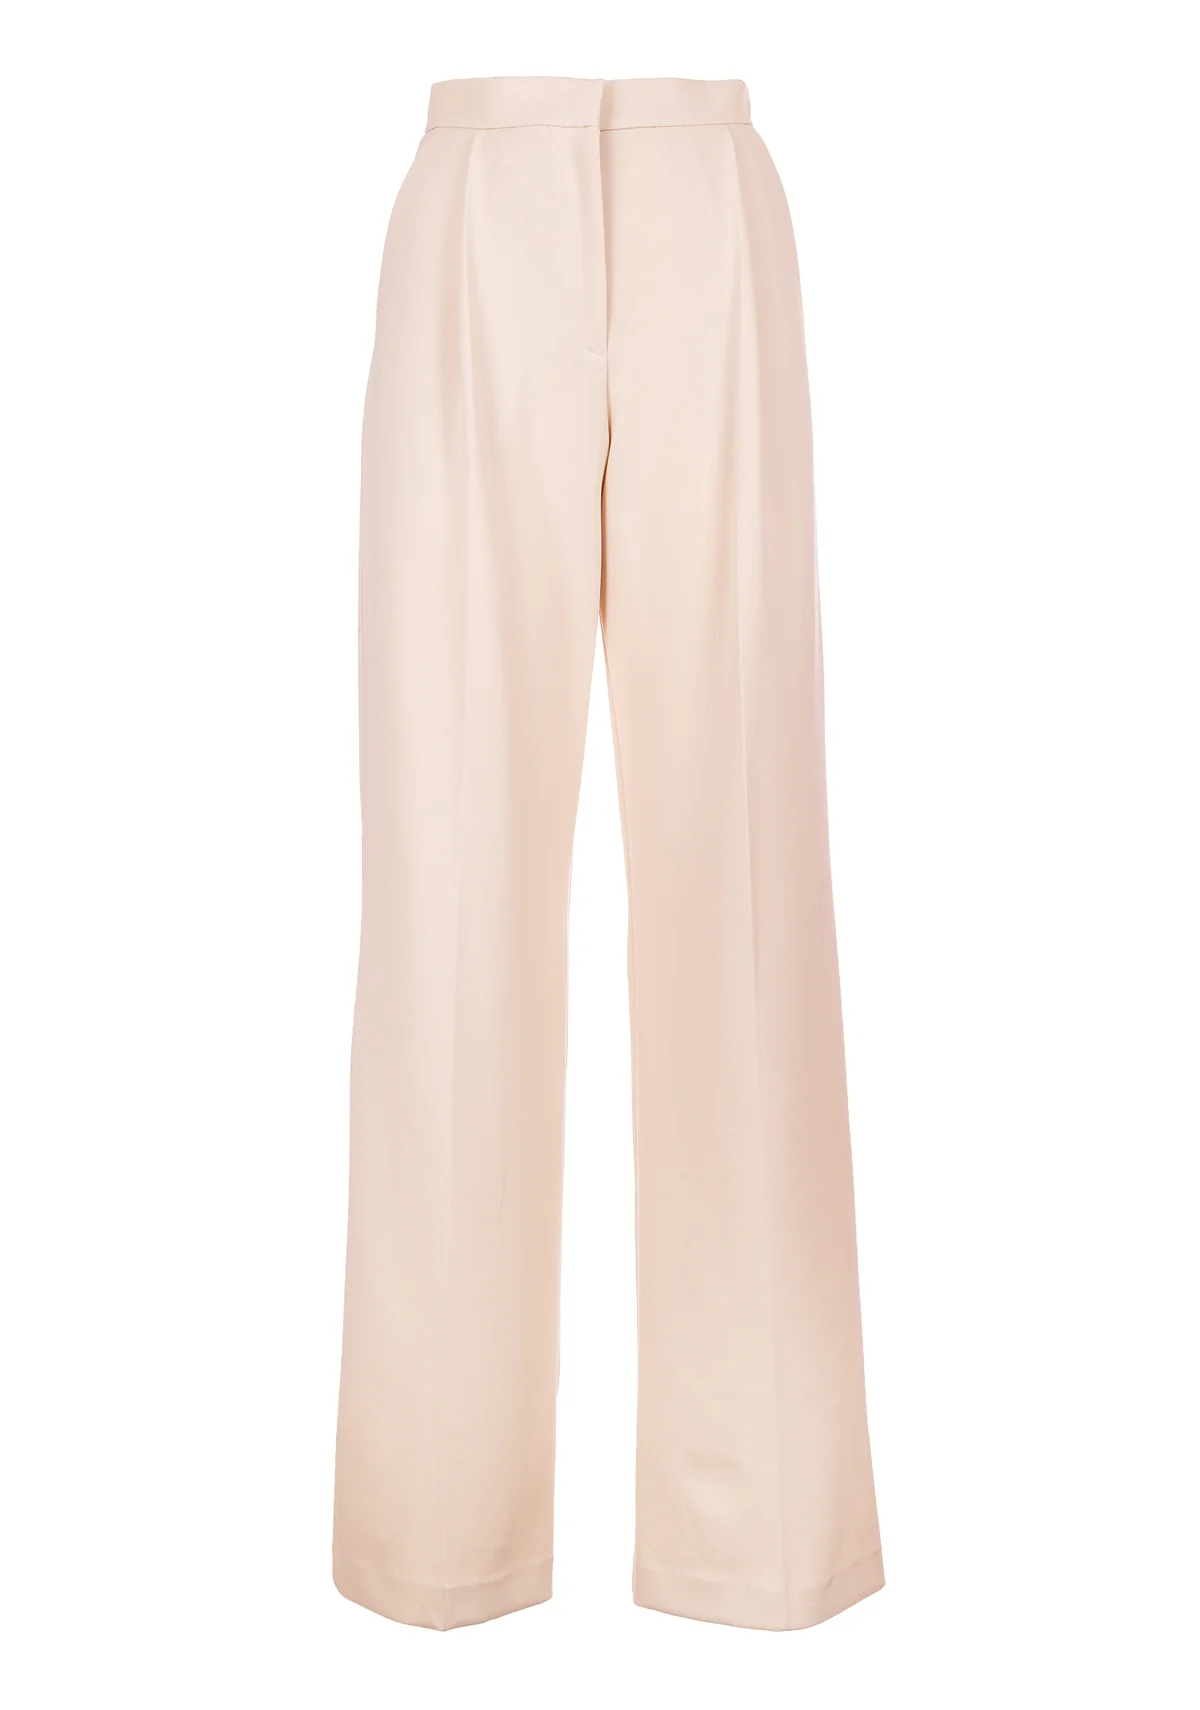 FRACOMINA pantalón ancho color crema  con pinzas - 2